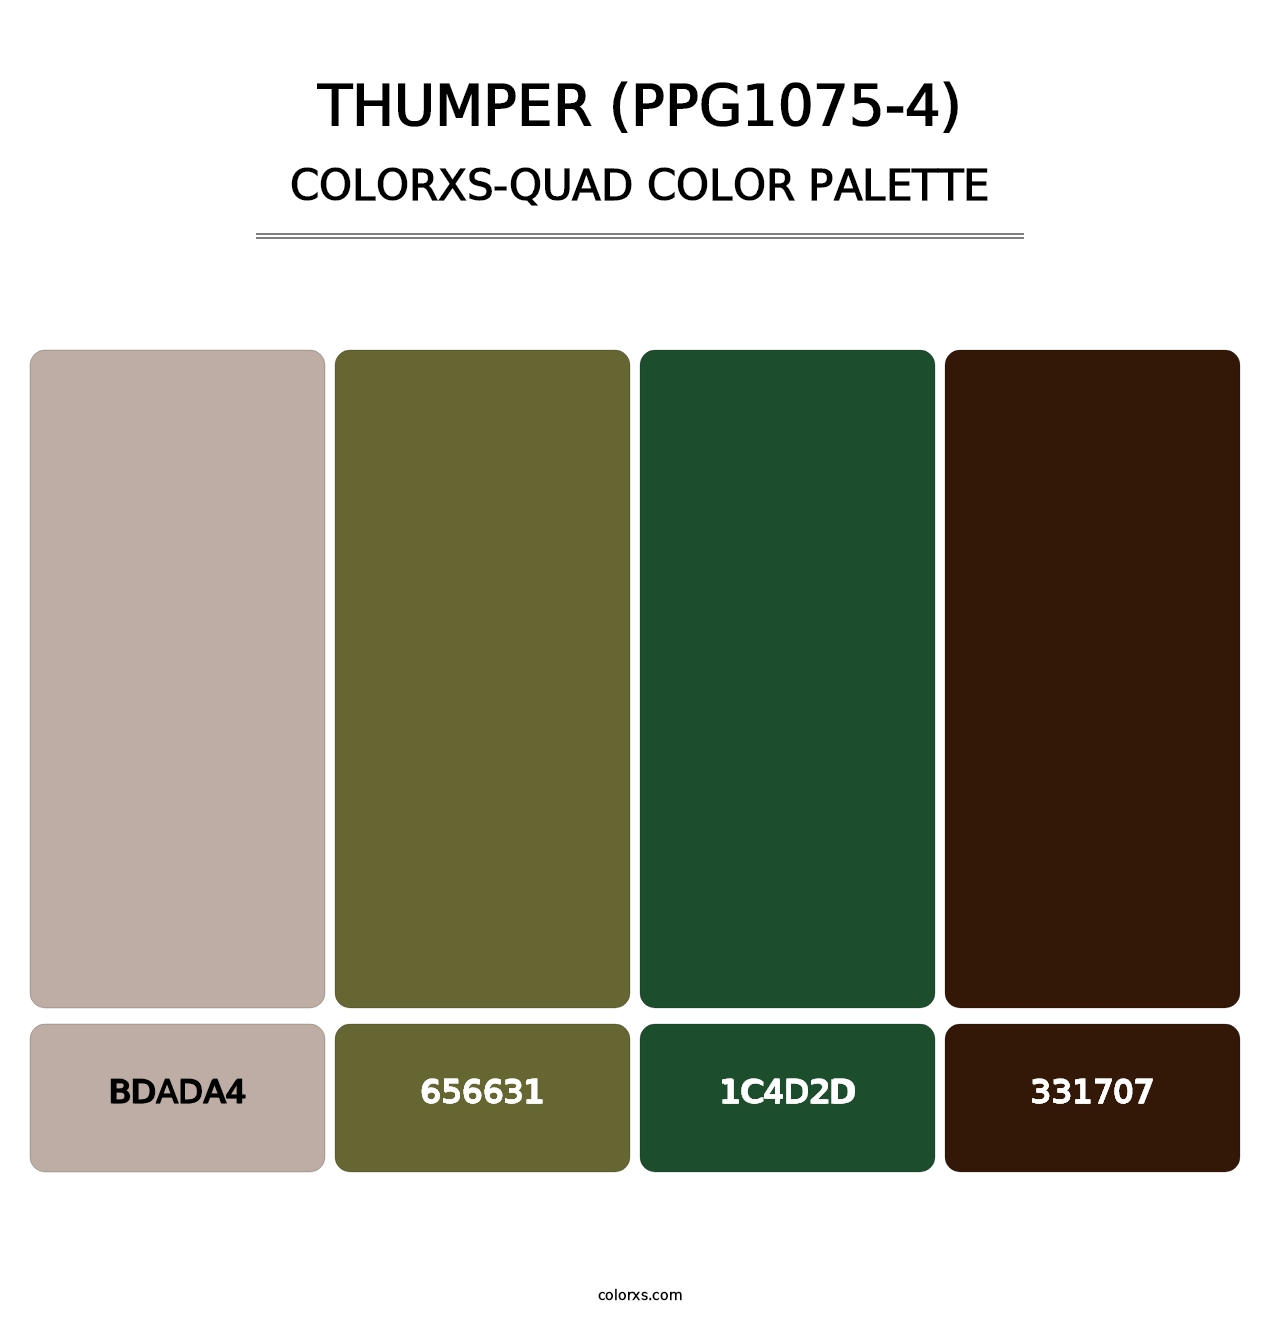 Thumper (PPG1075-4) - Colorxs Quad Palette